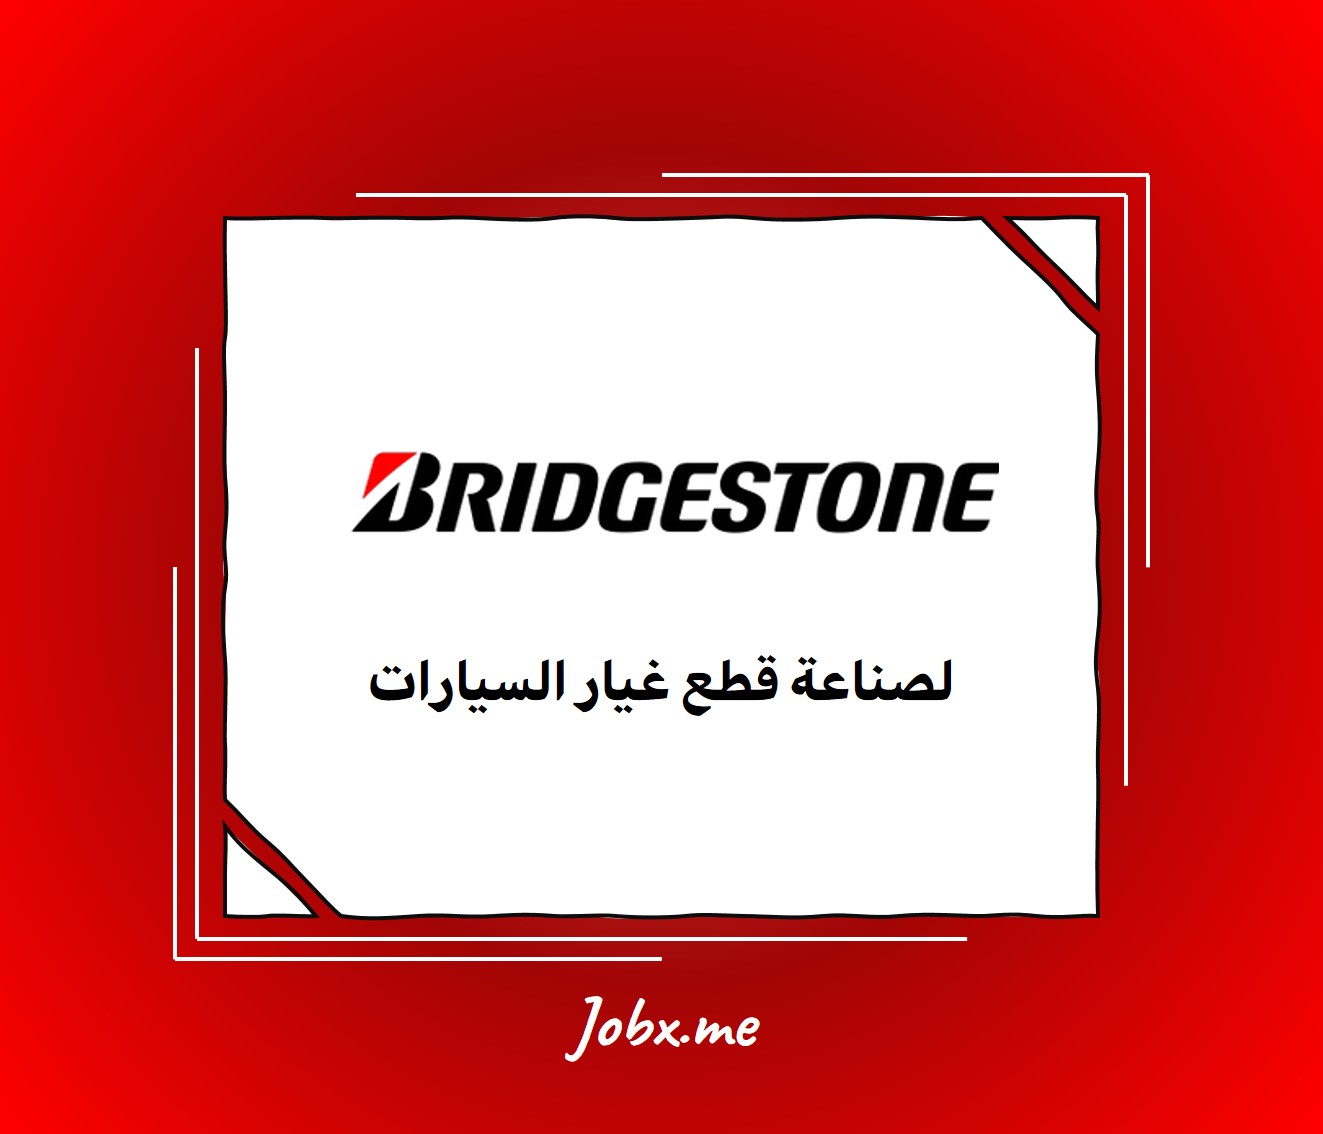 Bridgestone Careers